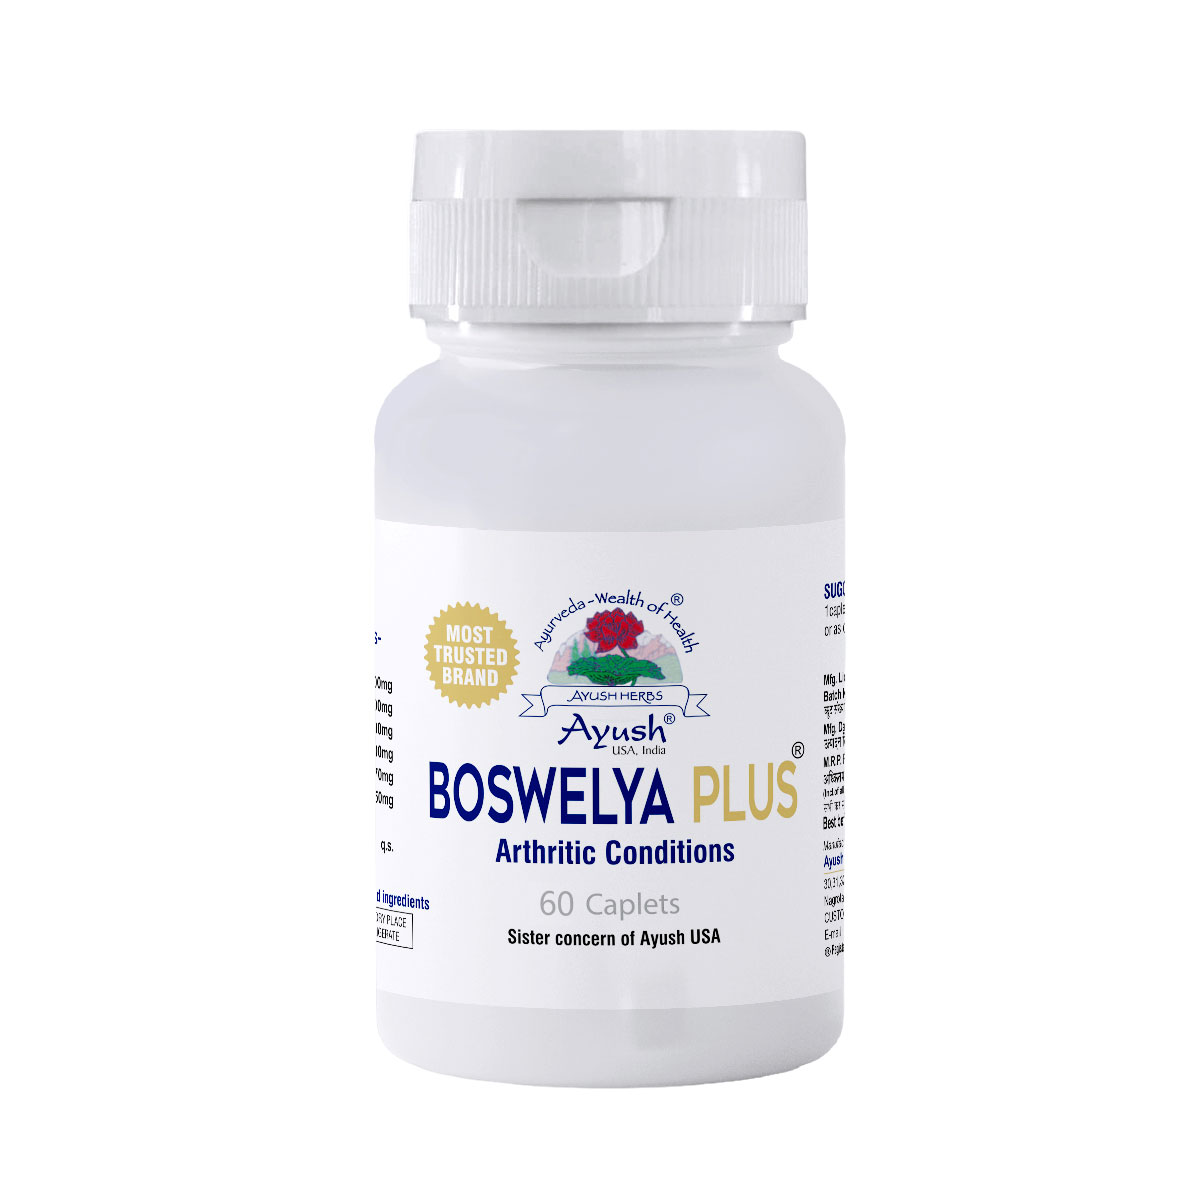 Boswelya Plus